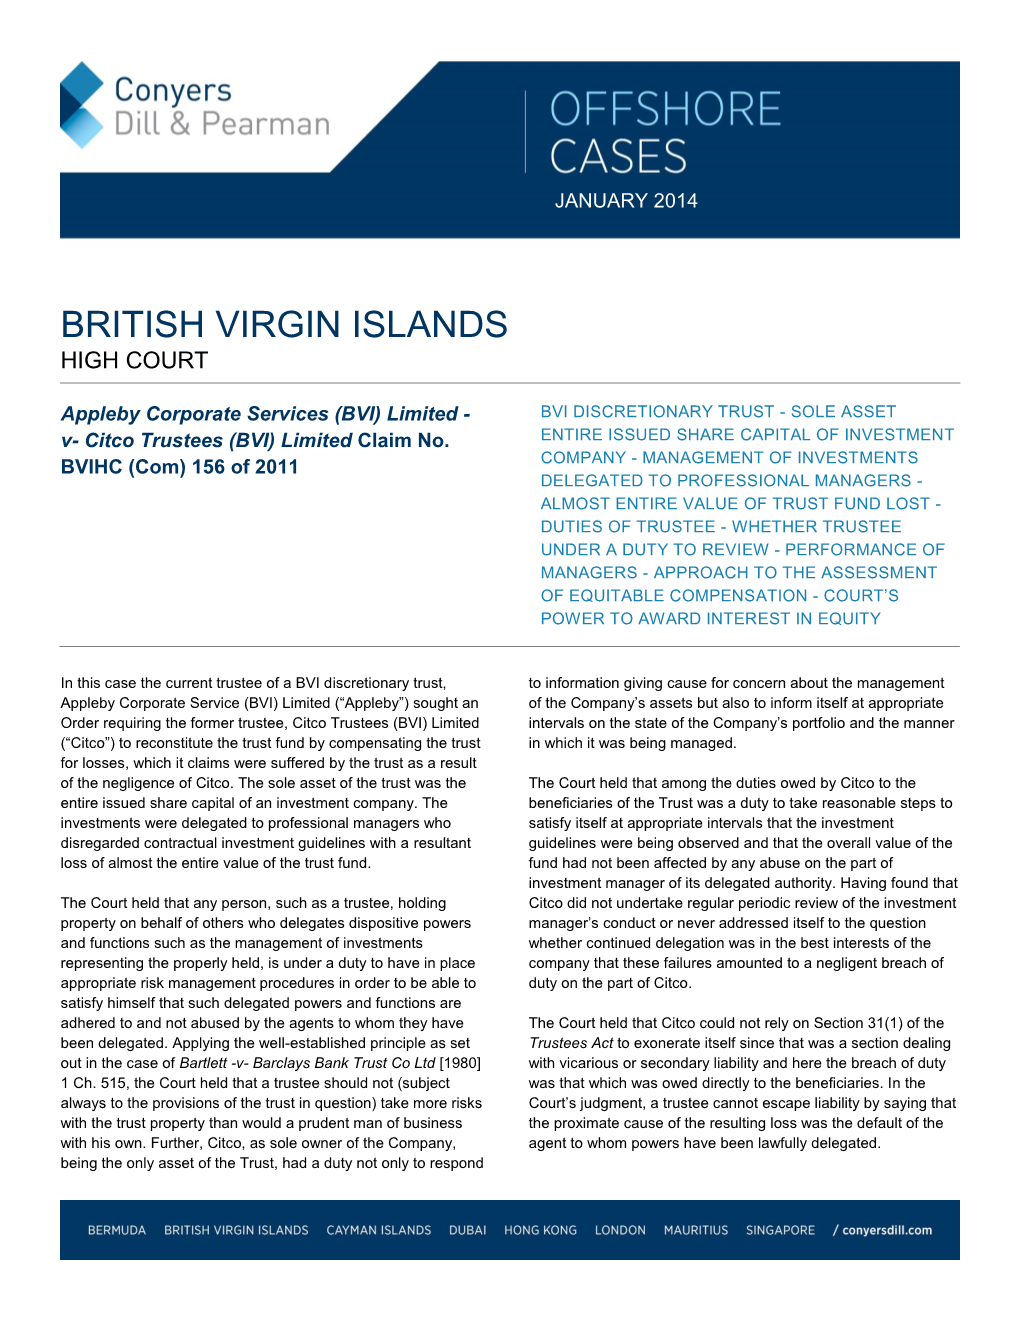 British Virgin Islands High Court